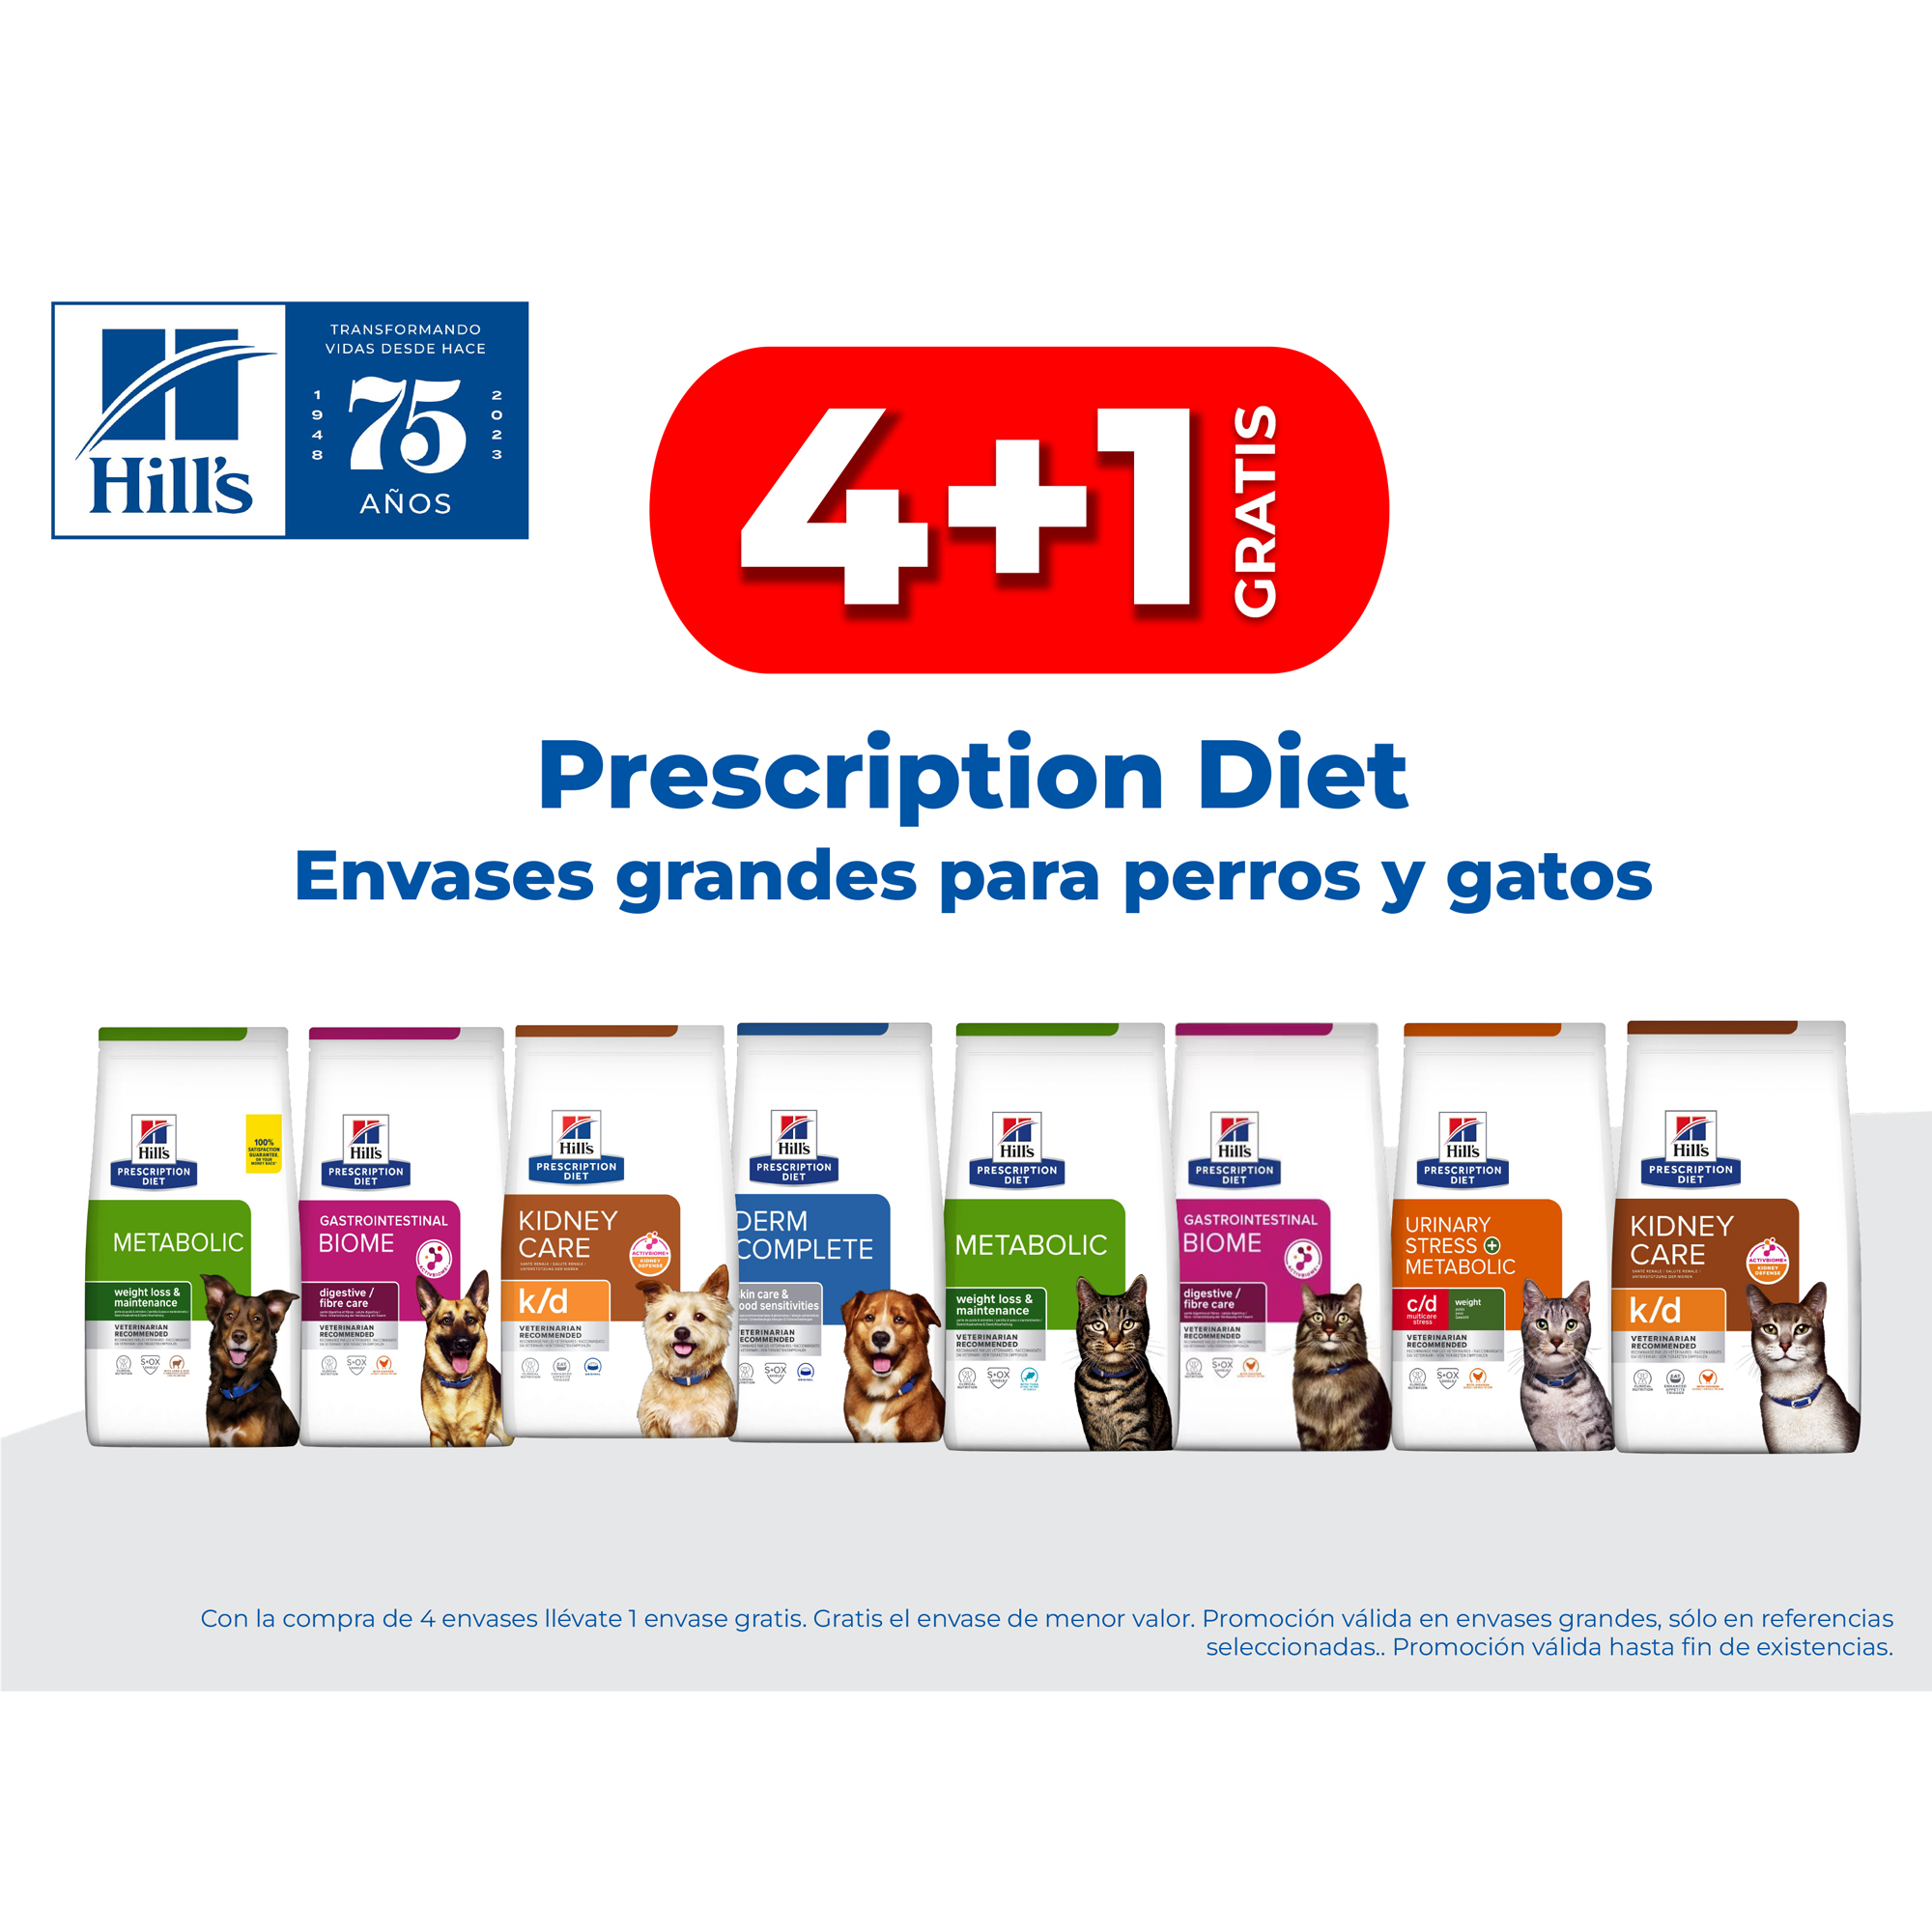 4+1 GRATIS Prescription Diet Envases grandes para perros y gatos